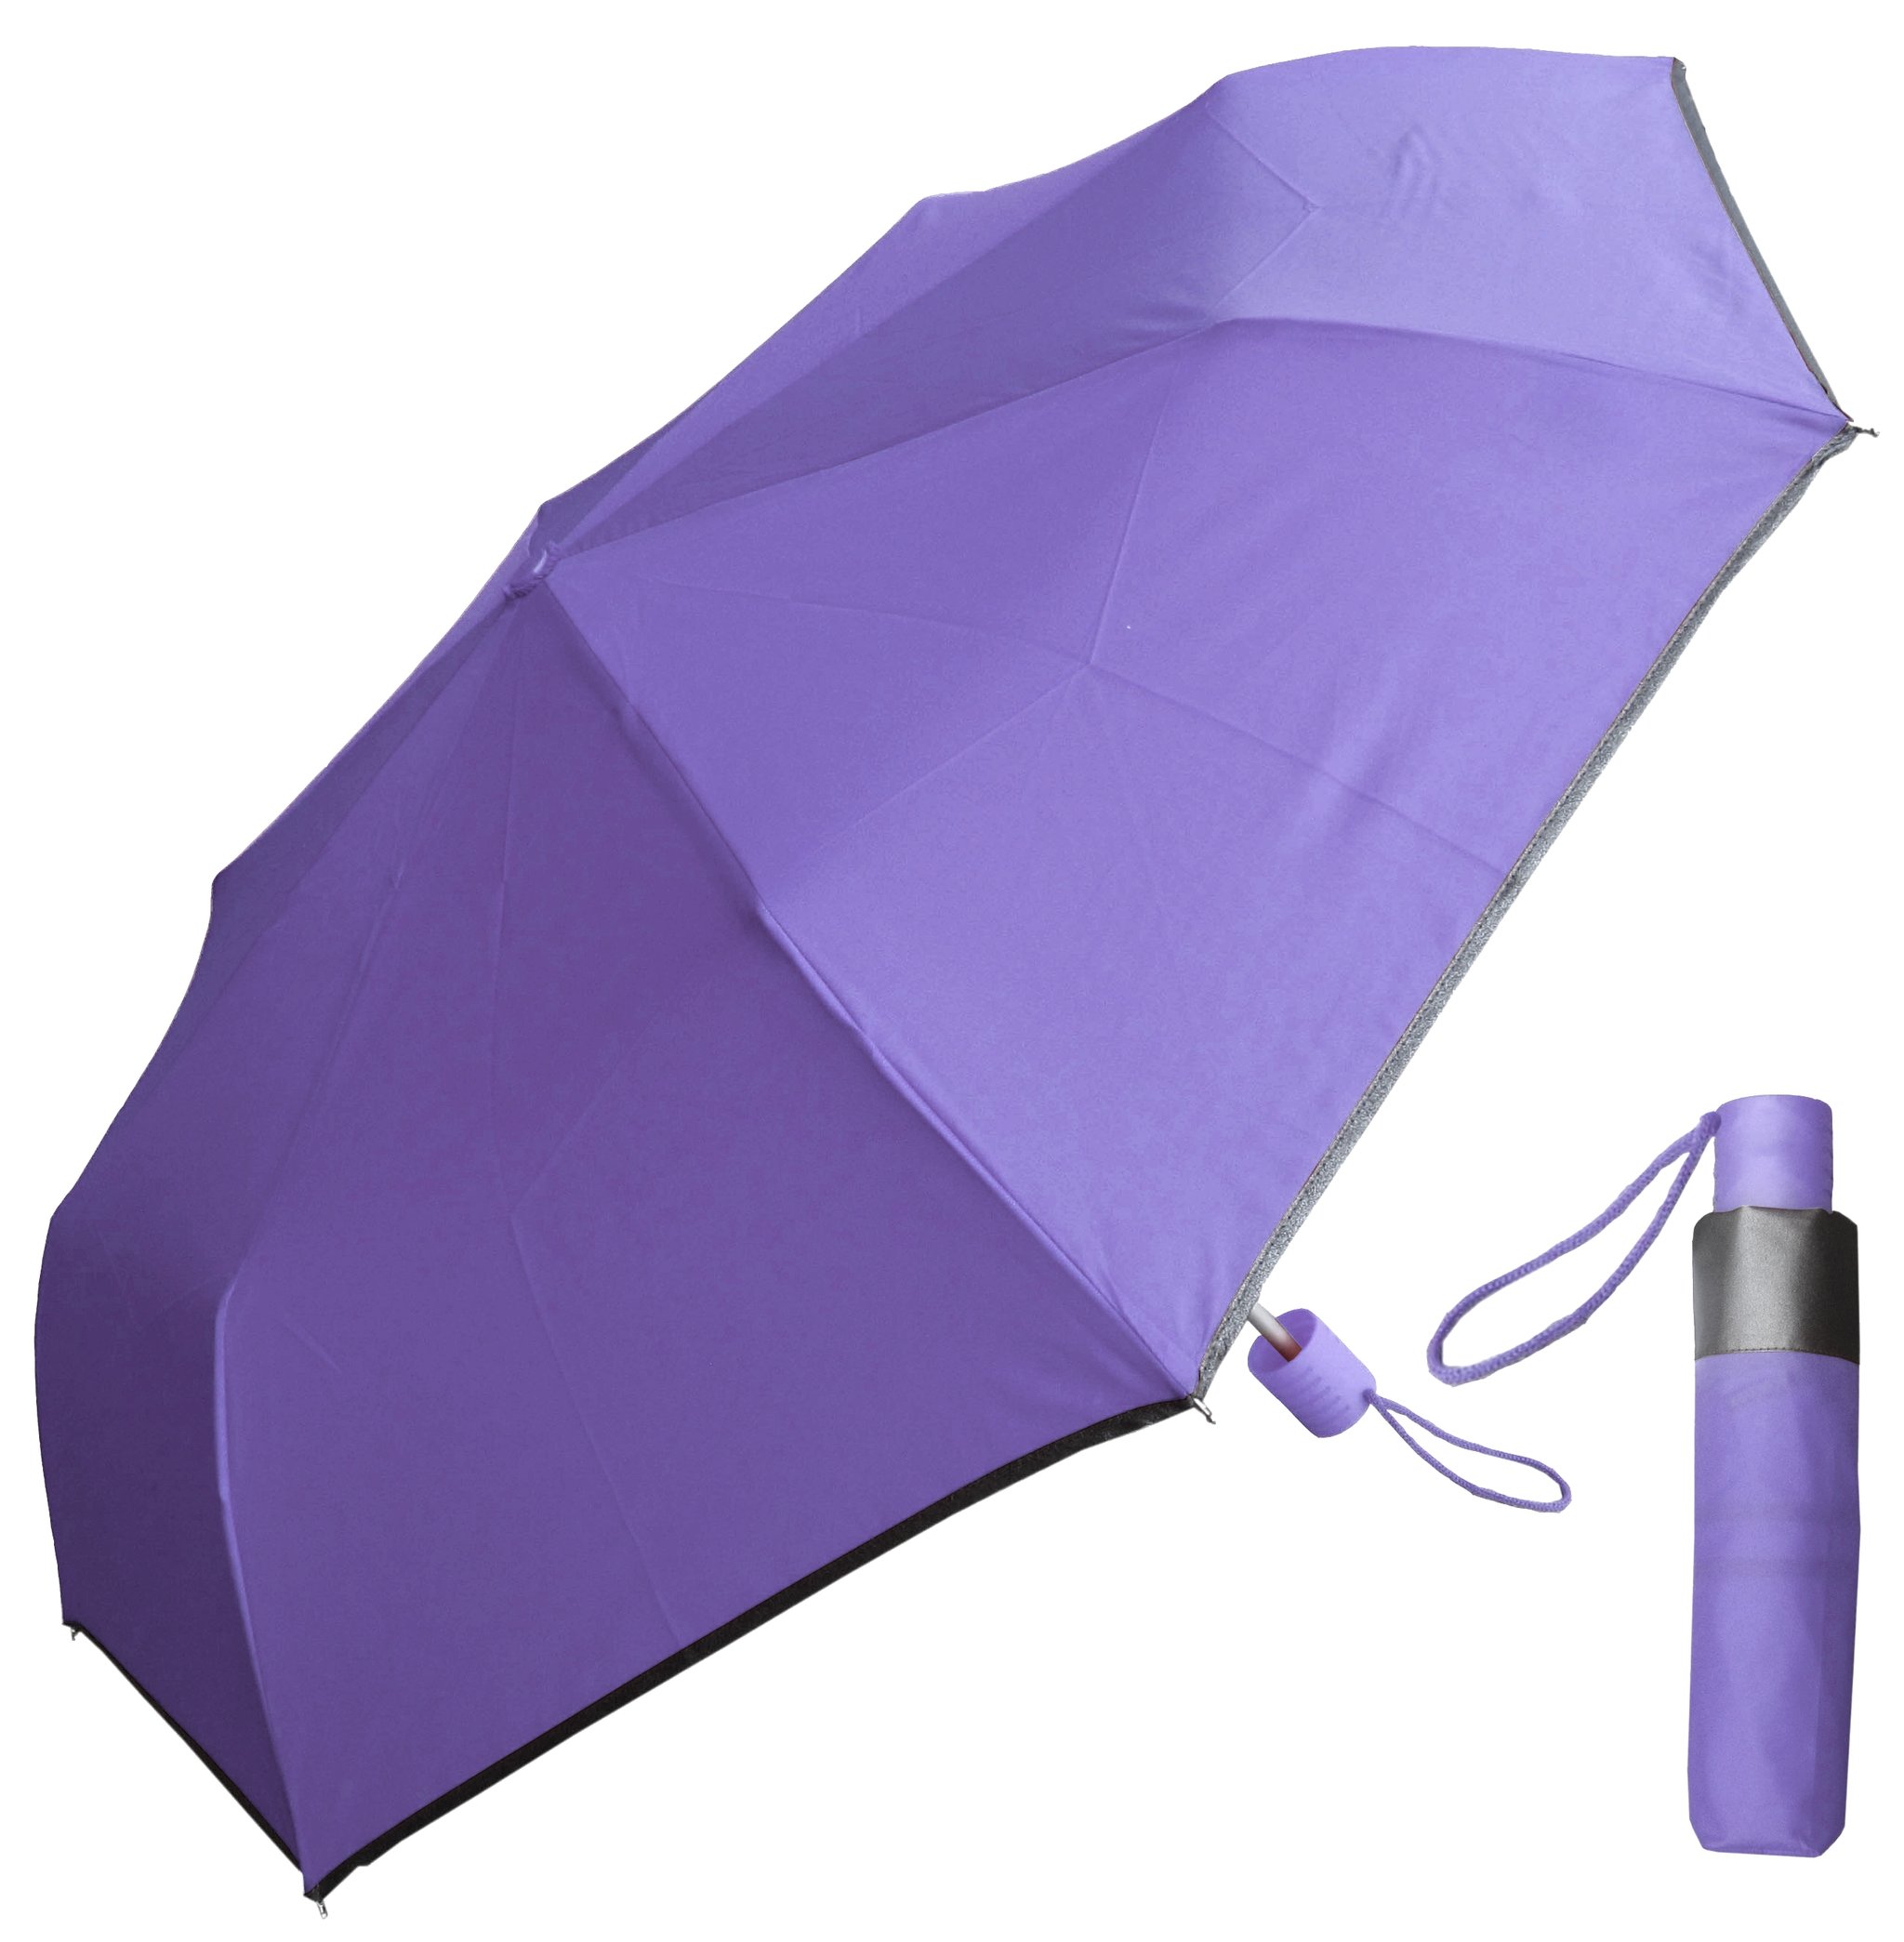 Bord réfléchissant 21 pouces * 8k, tissu de couleur assortie, parapluie pliant et cadeau double parapluie